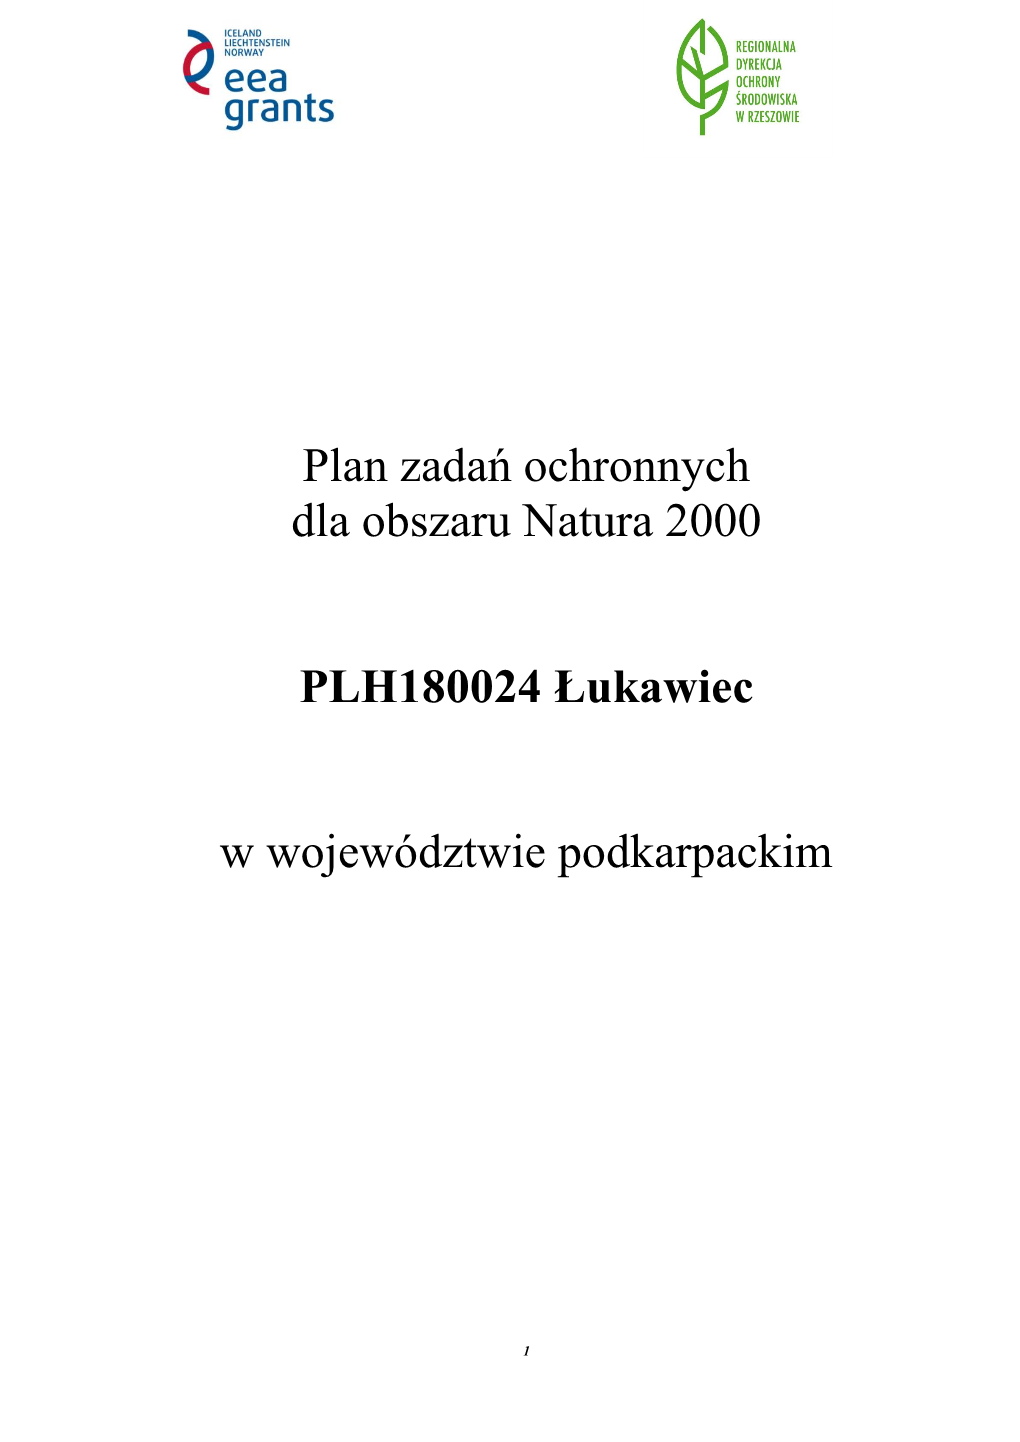 Plan Zadań Ochronnych Dla Obszaru Natura 2000 PLH180024 Łukawiec W Województwie Podkarpackim